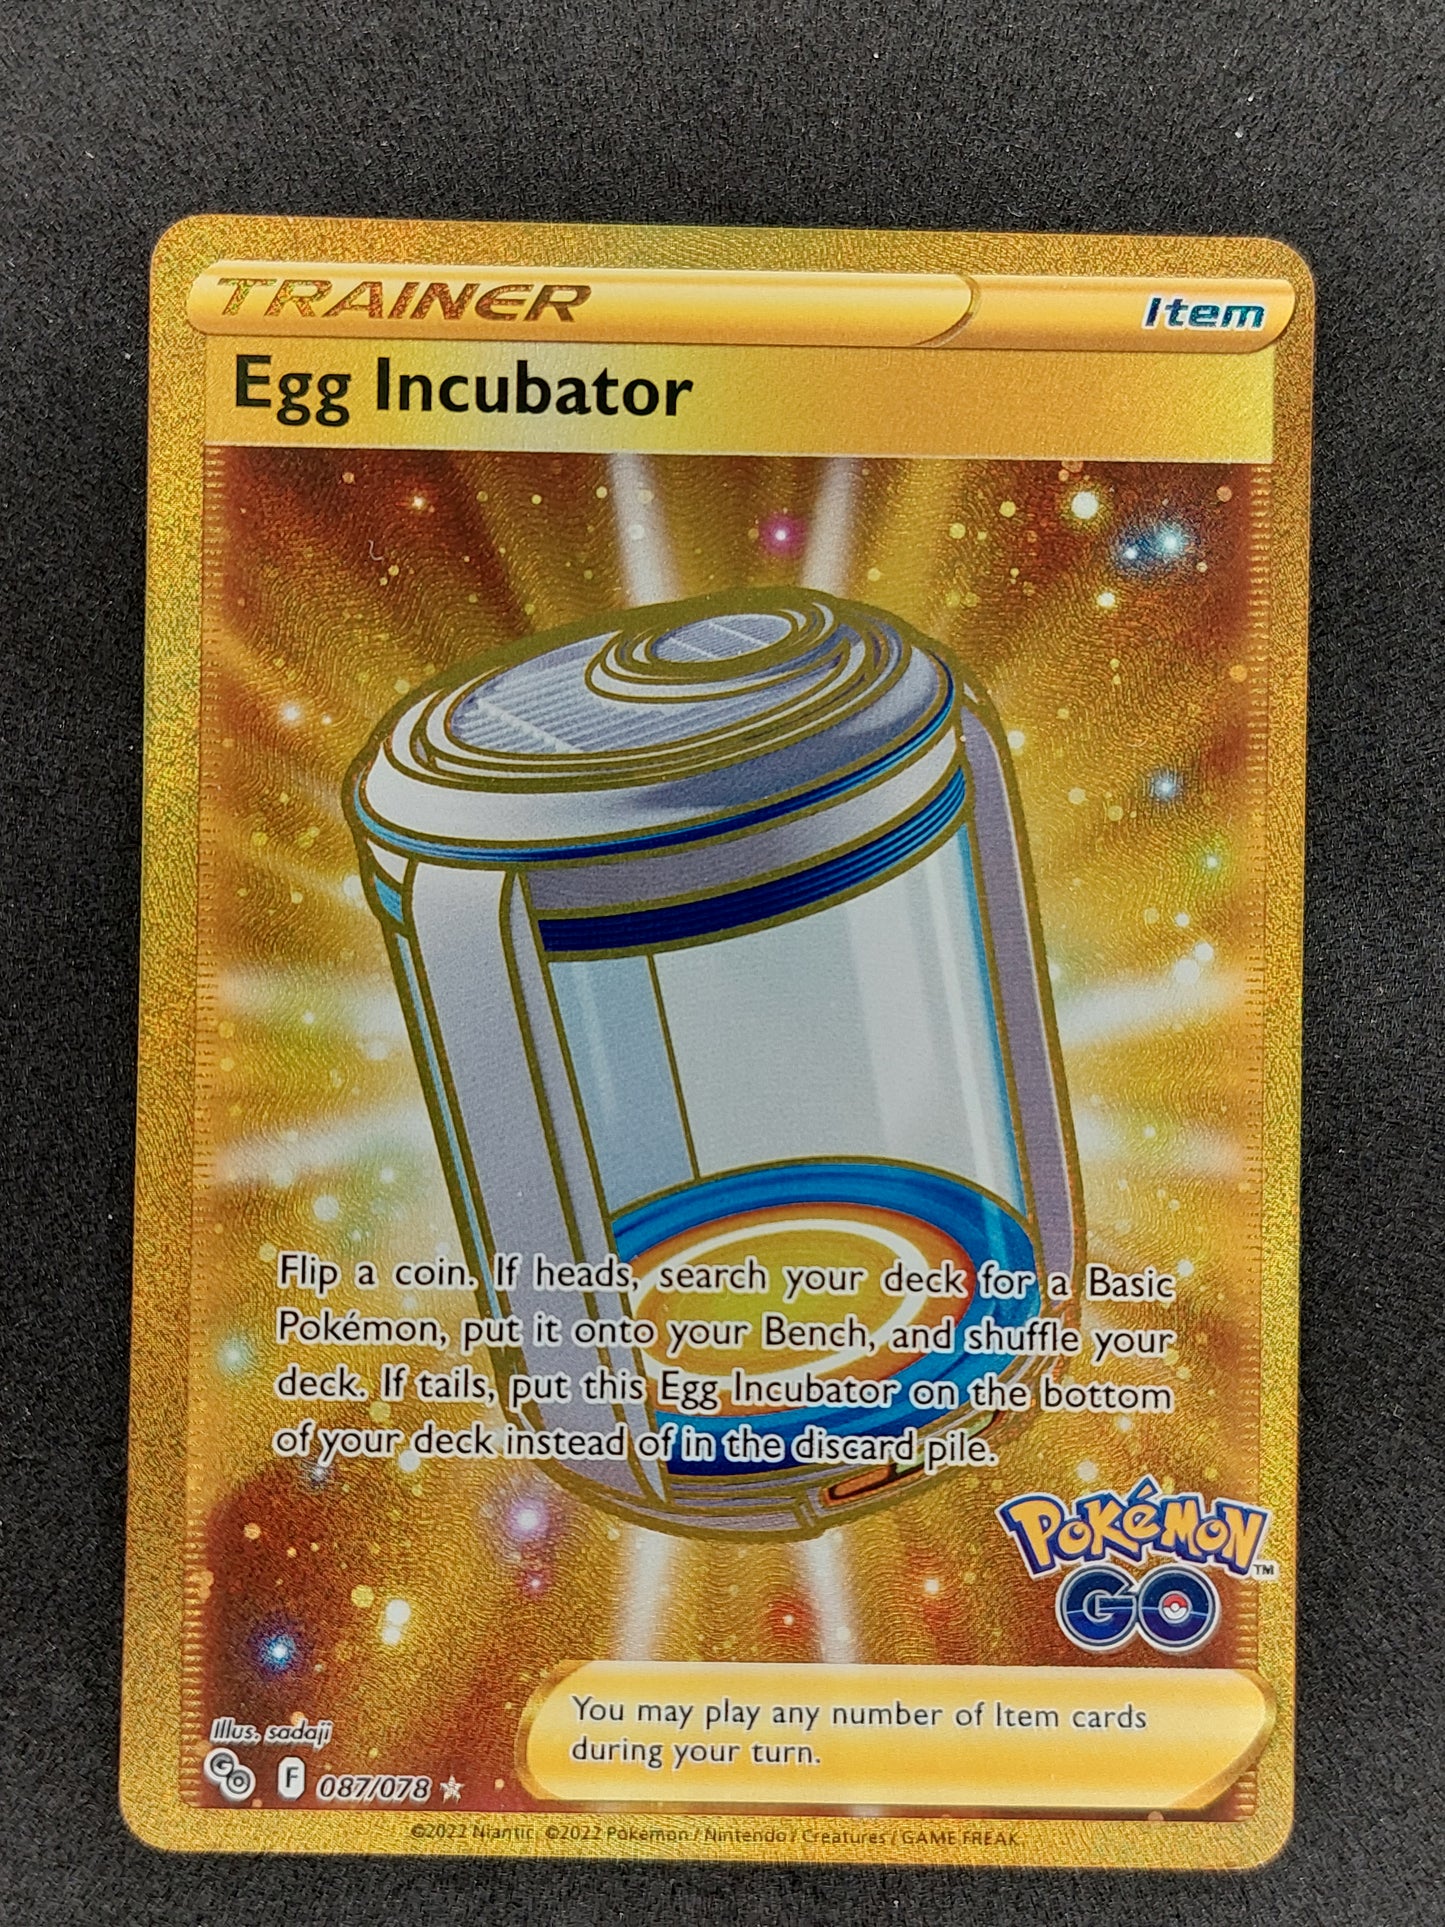 2022 Pokemon Go Trainer Egg Incubator Gold Secret Rare 087/078